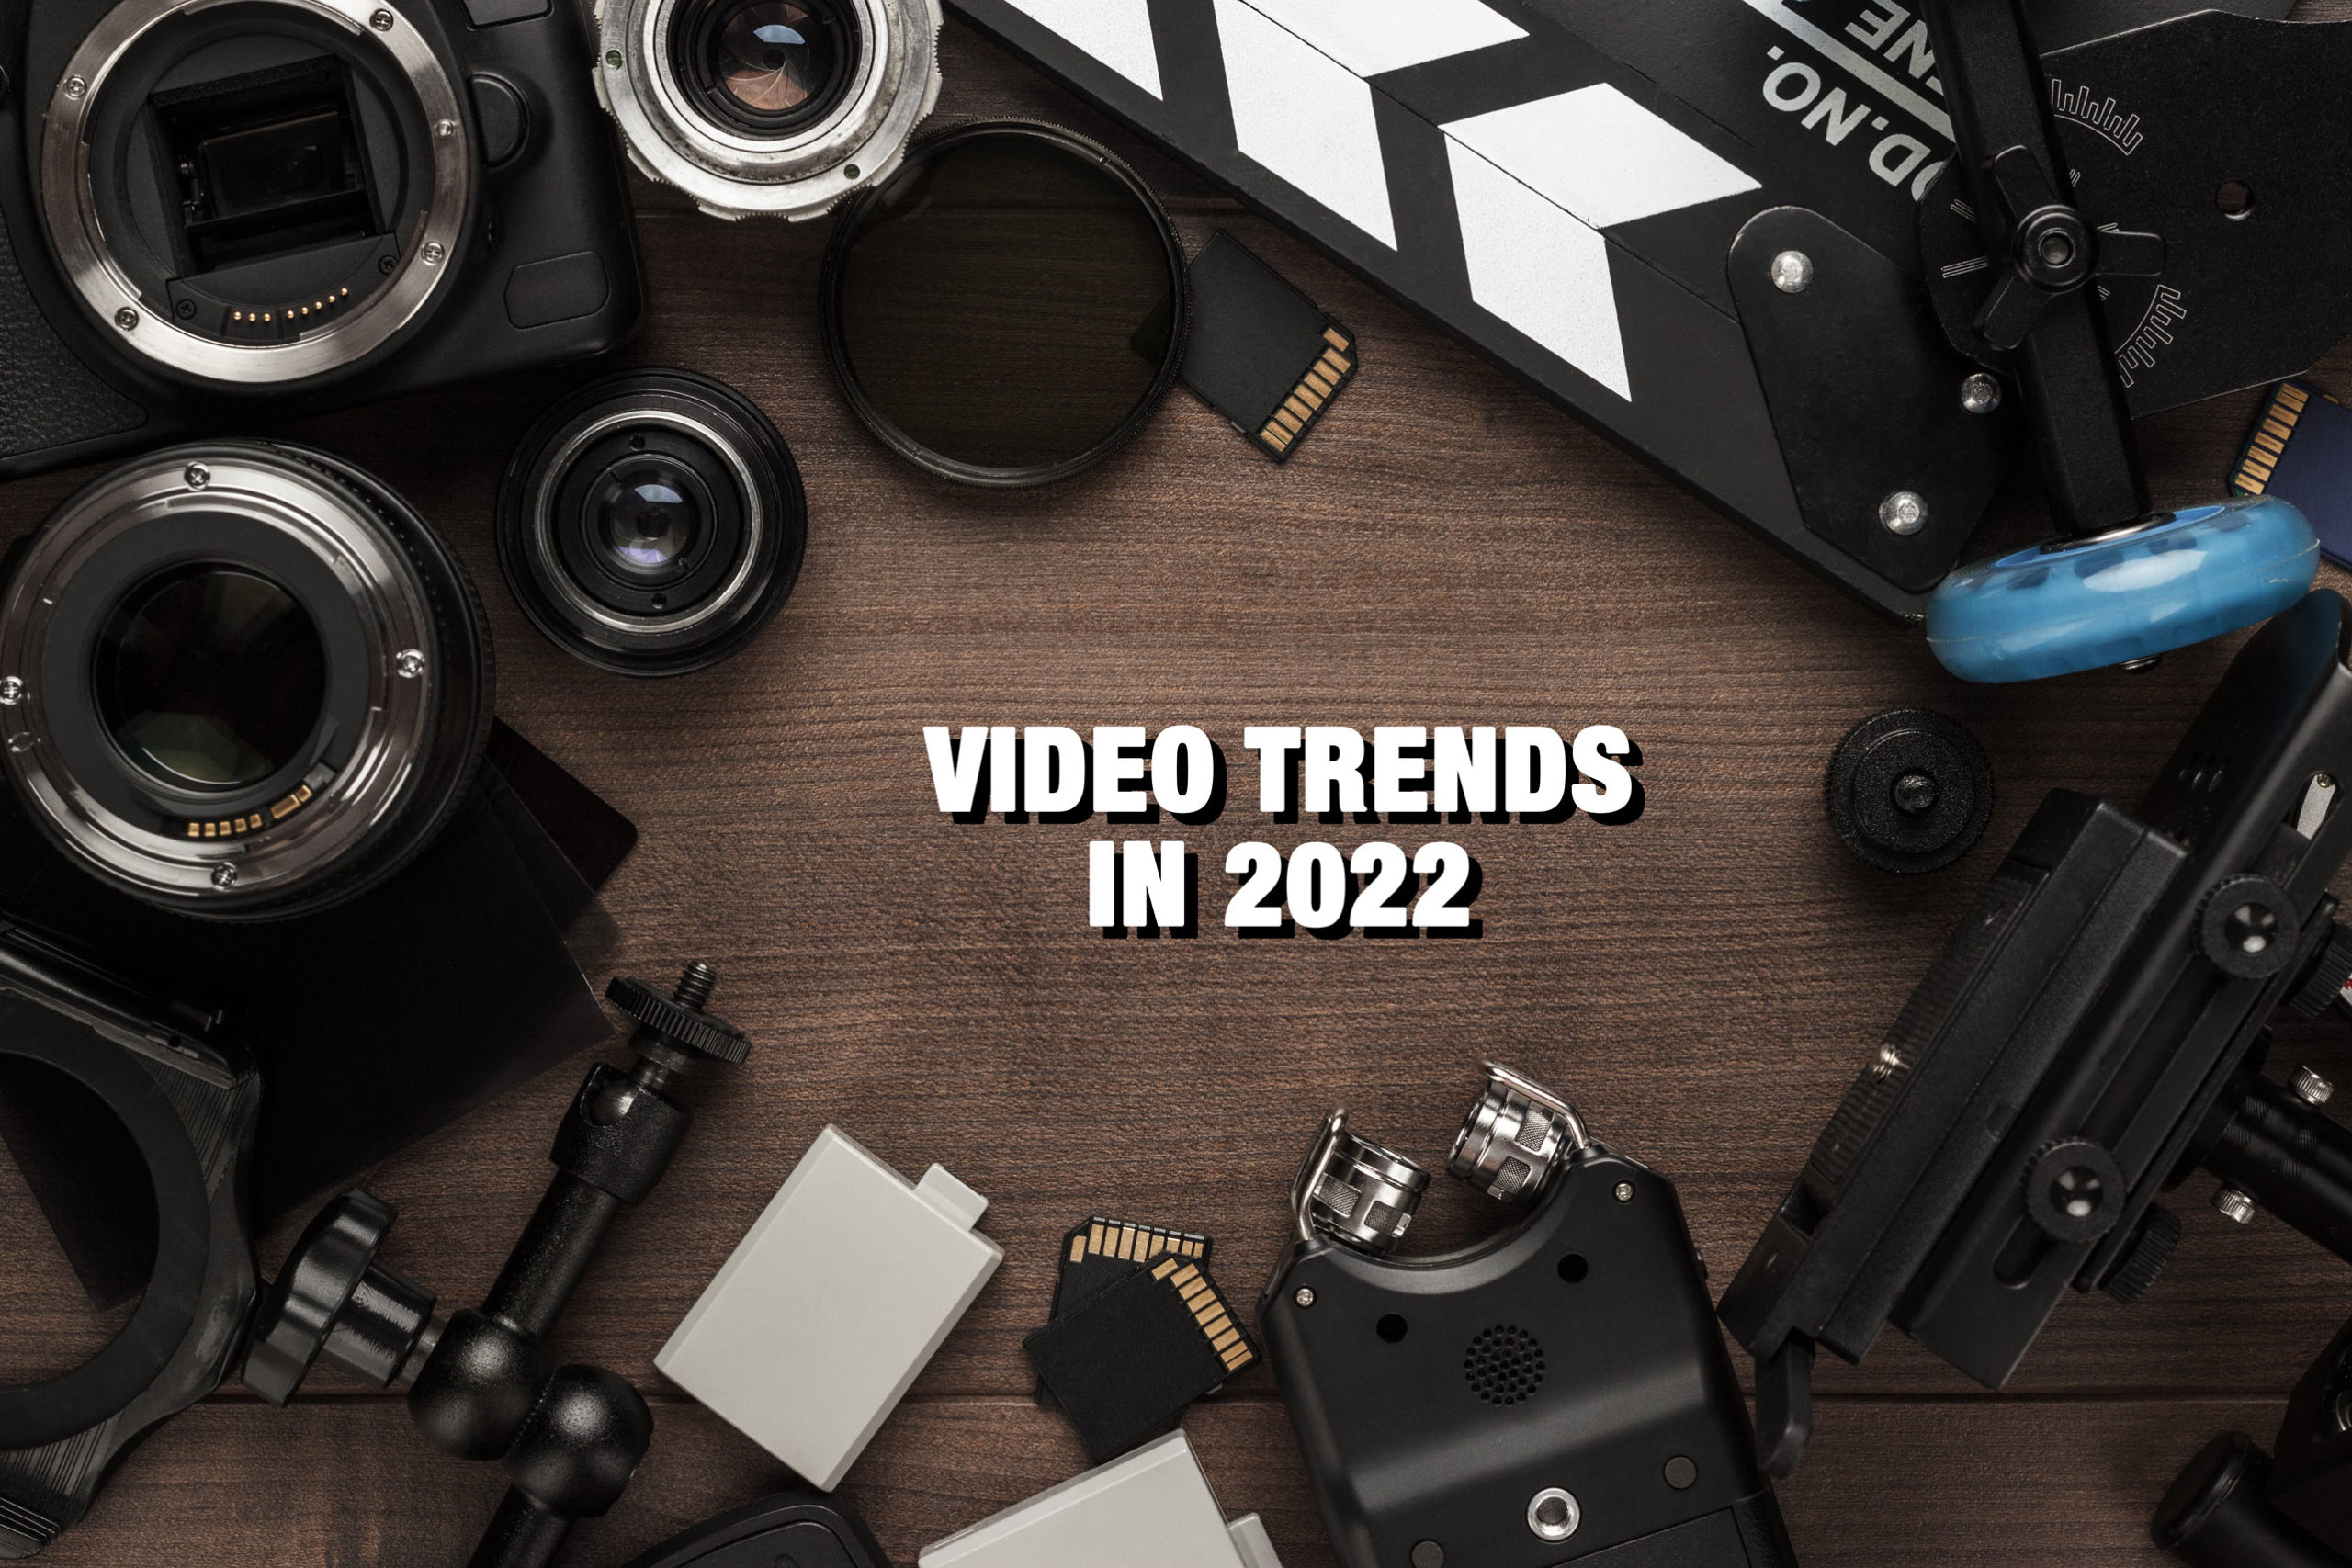 Video trends in 2022